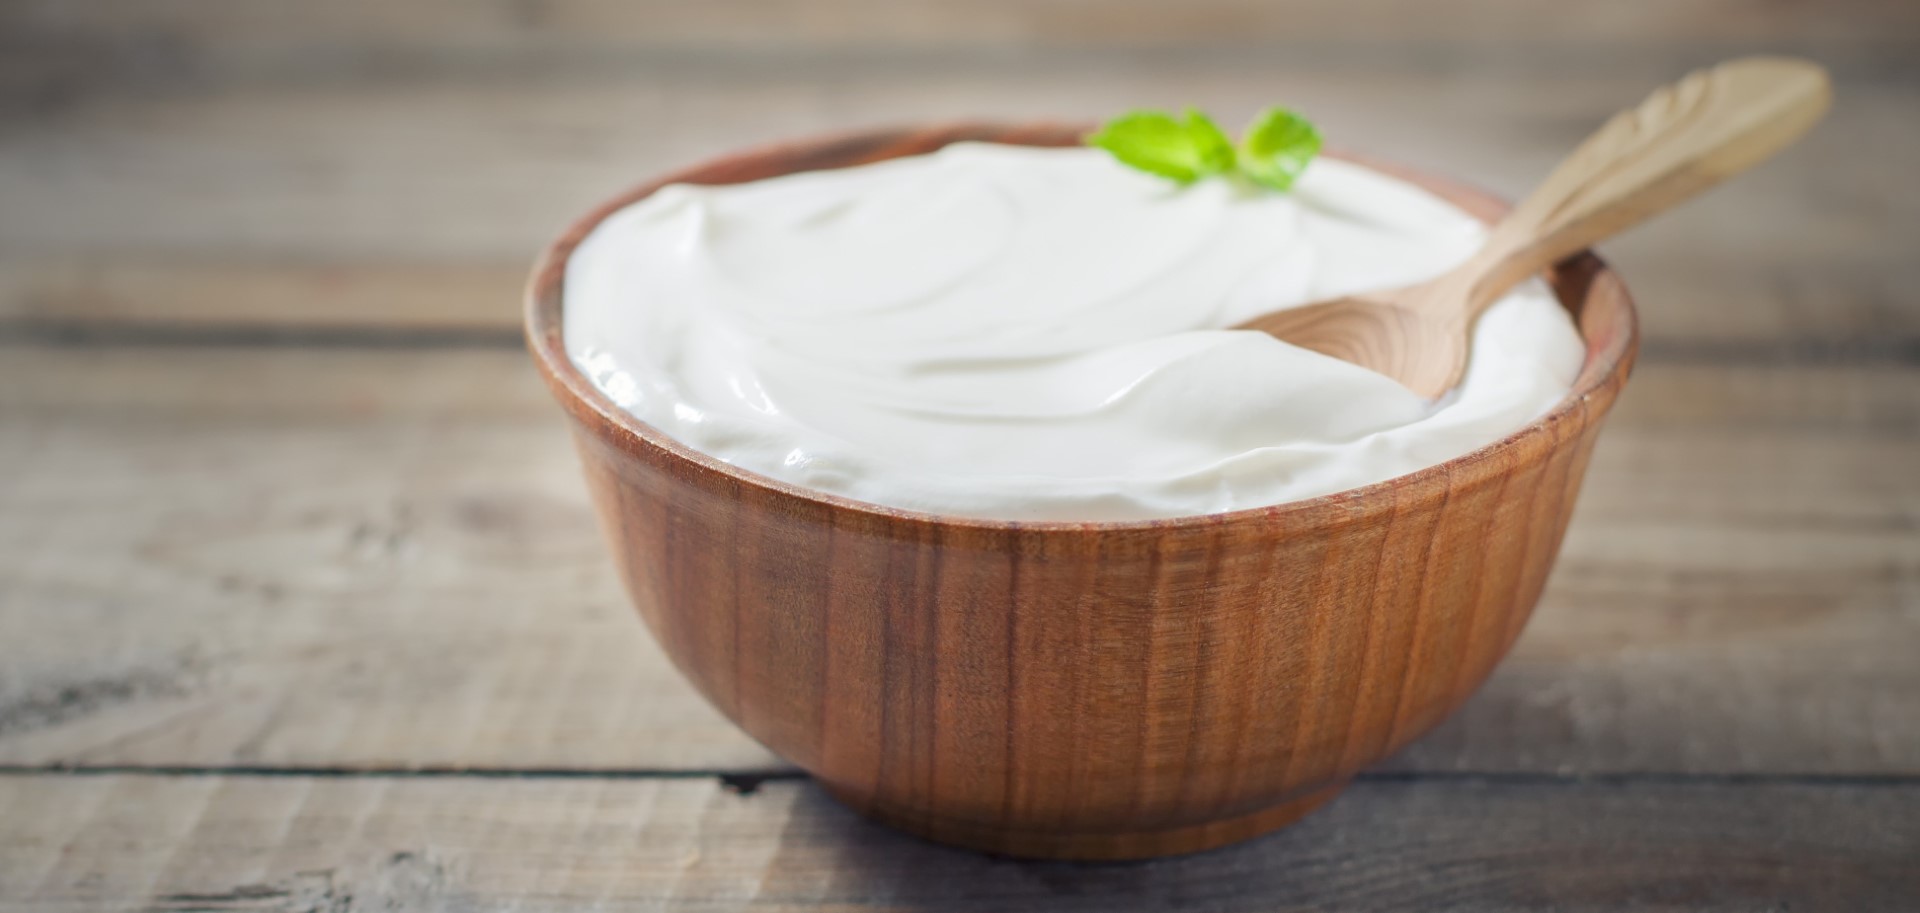 Bowl of yogurt in a bowl